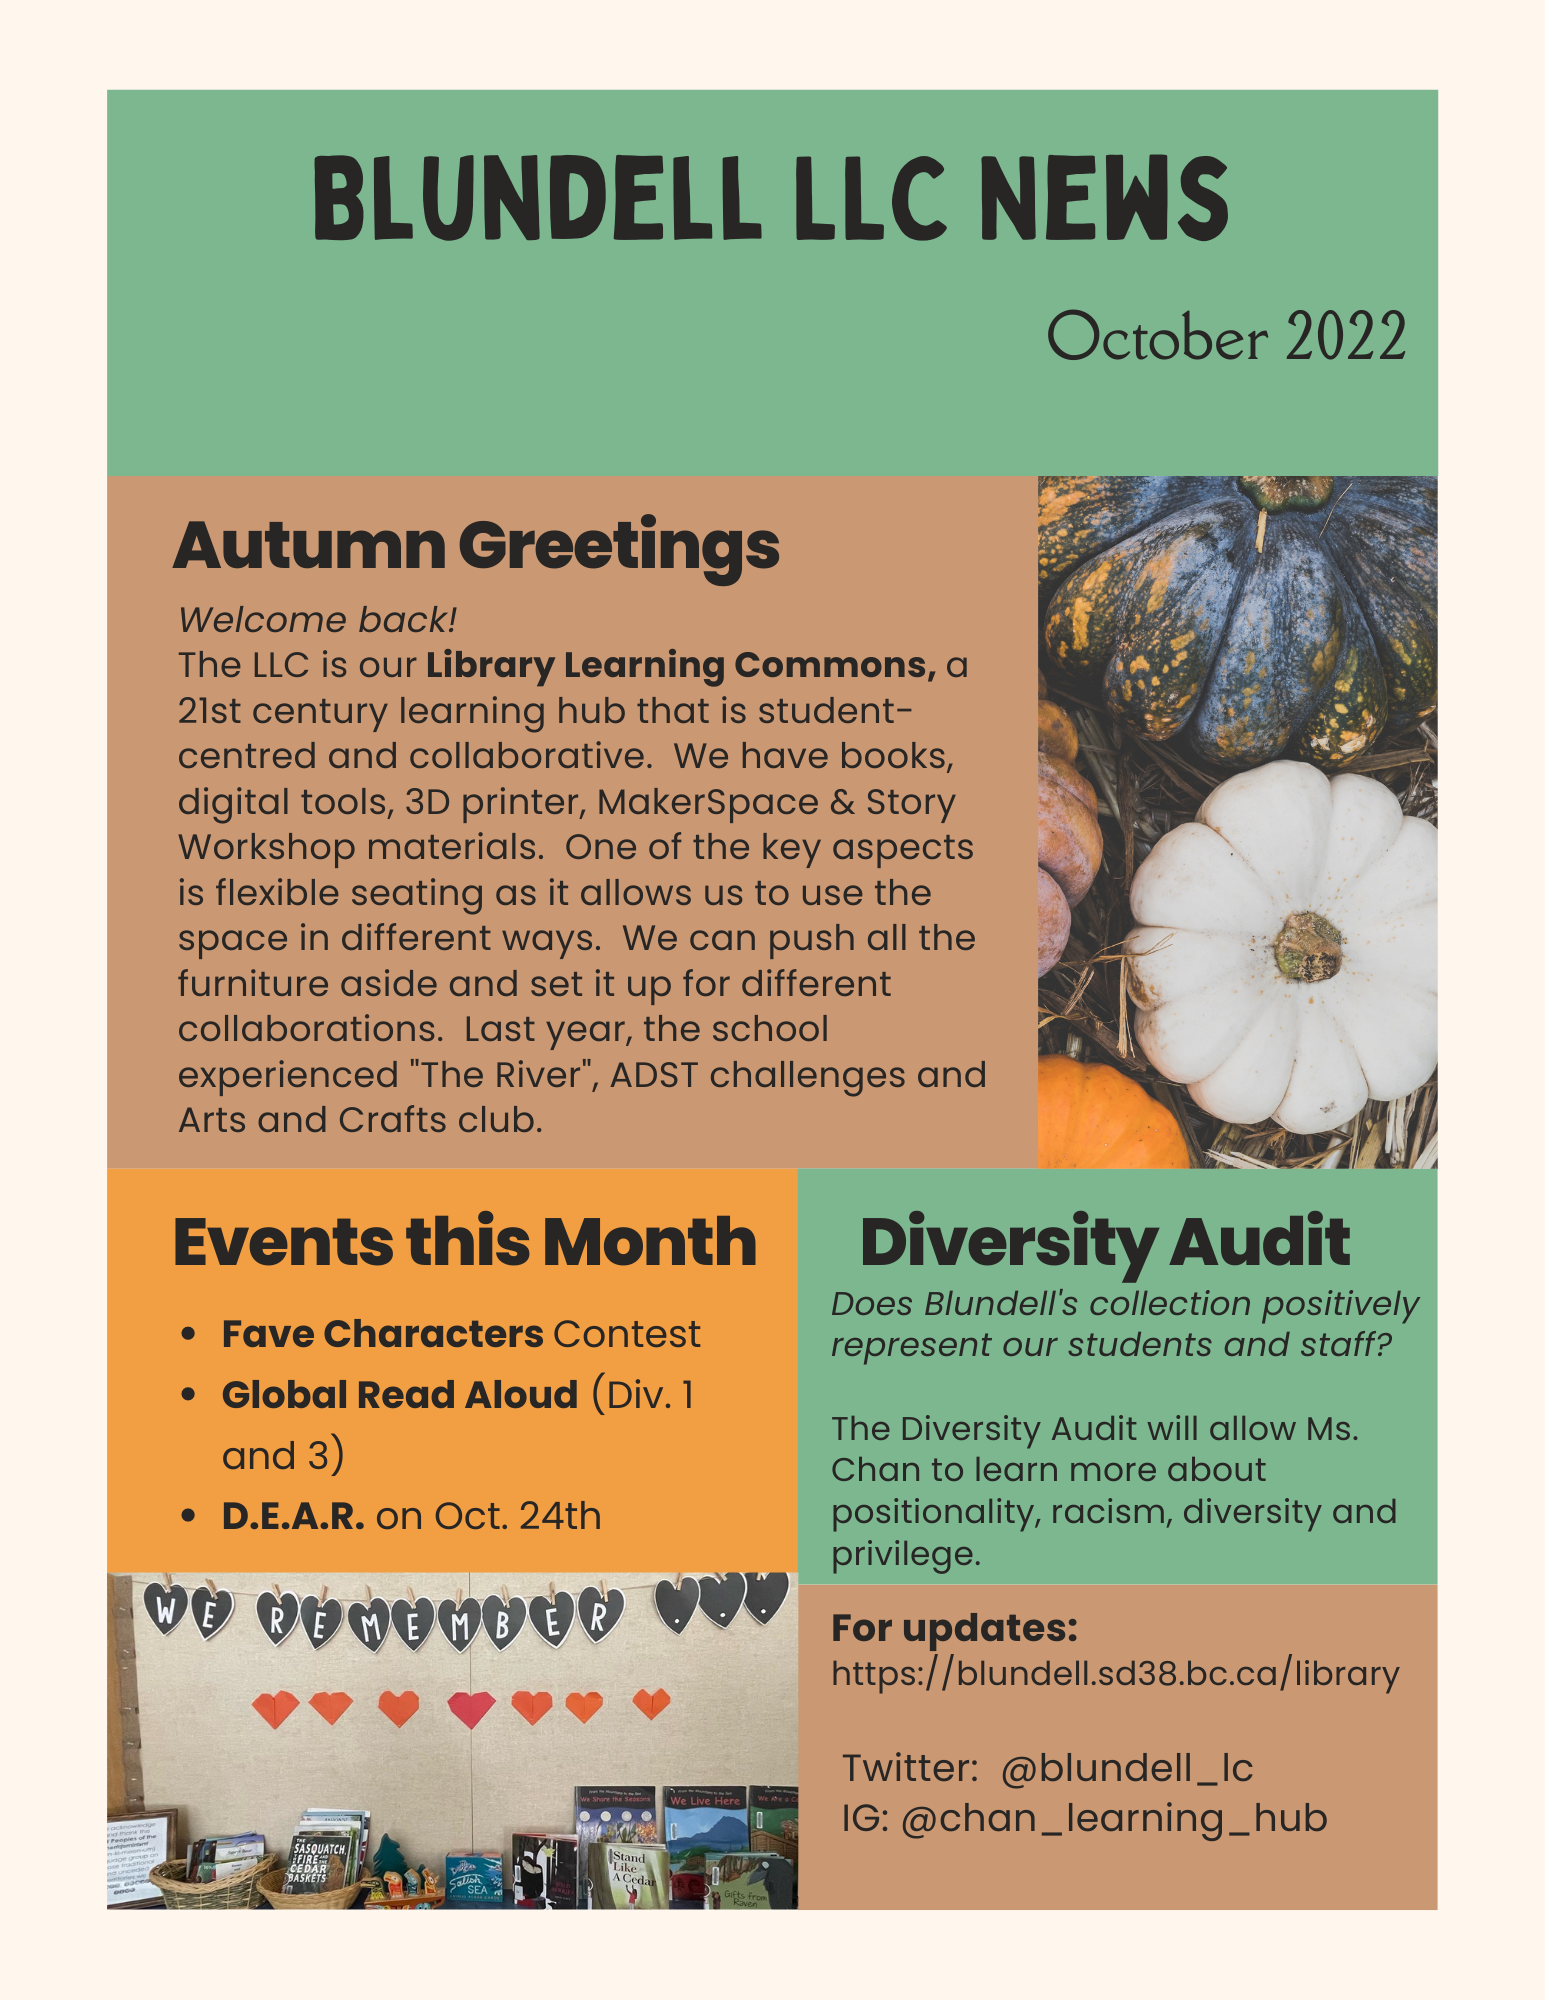 Autumn newsletter